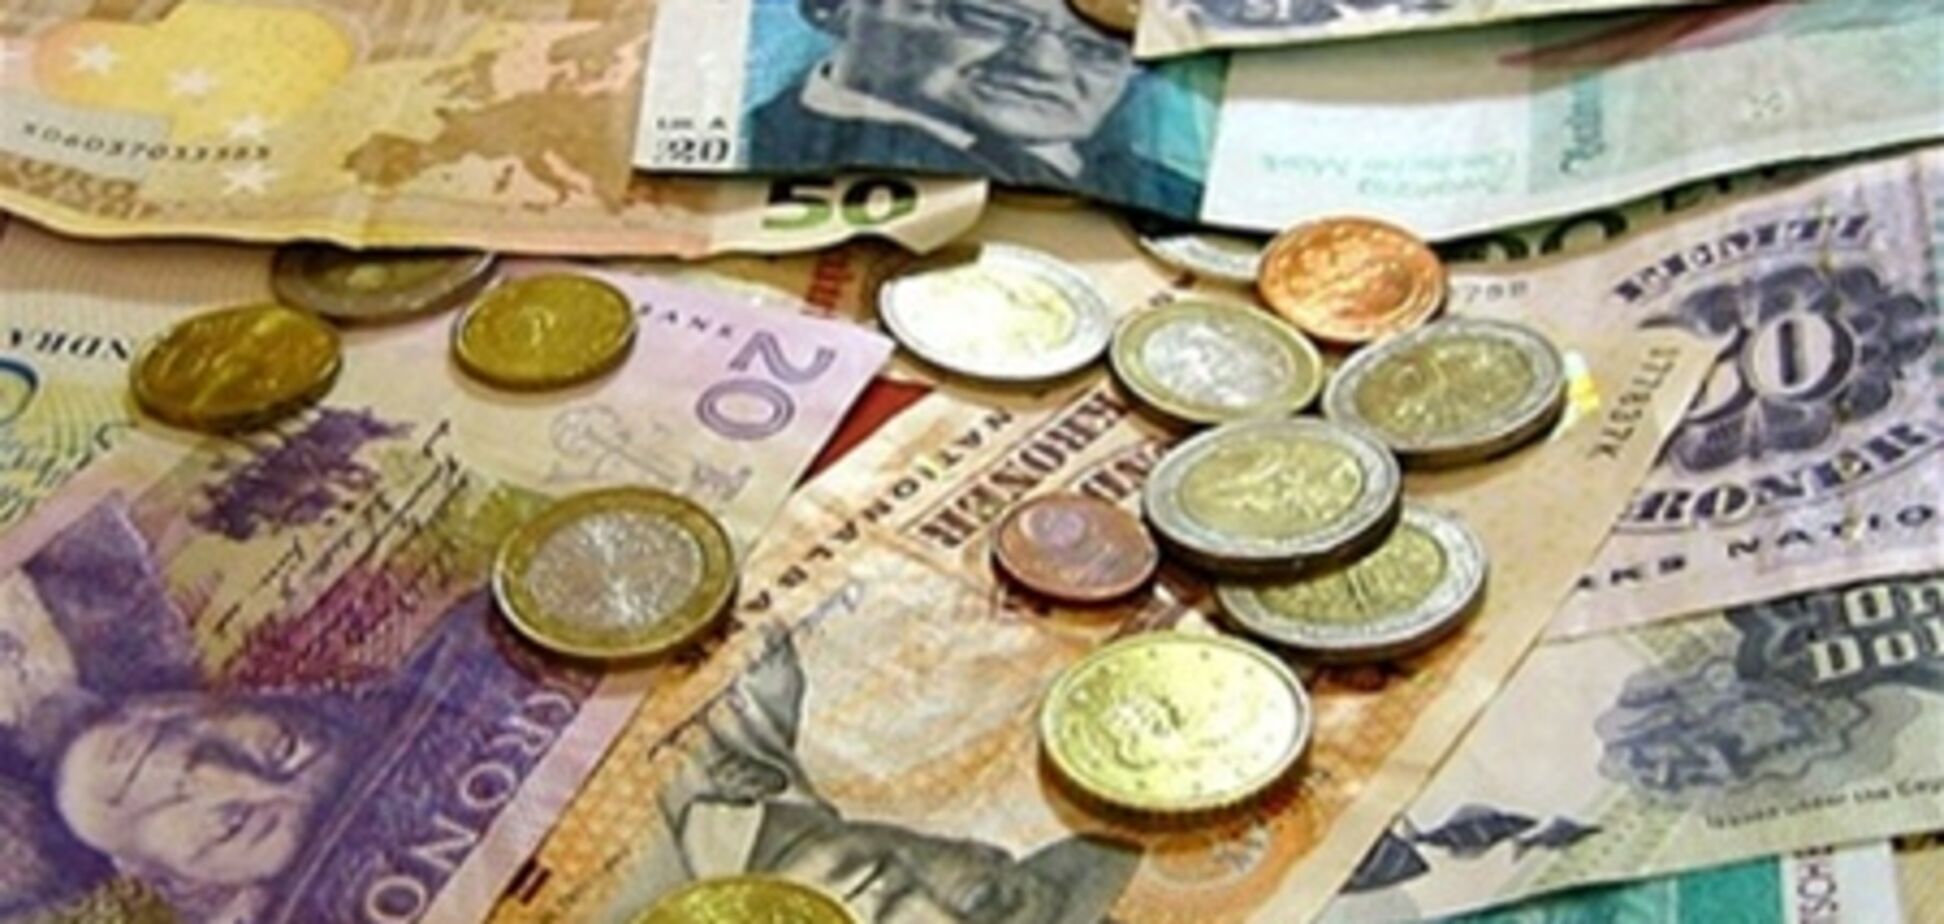 Спрос в апреле на наличную валюту будет сопоставим с мартом - эксперт